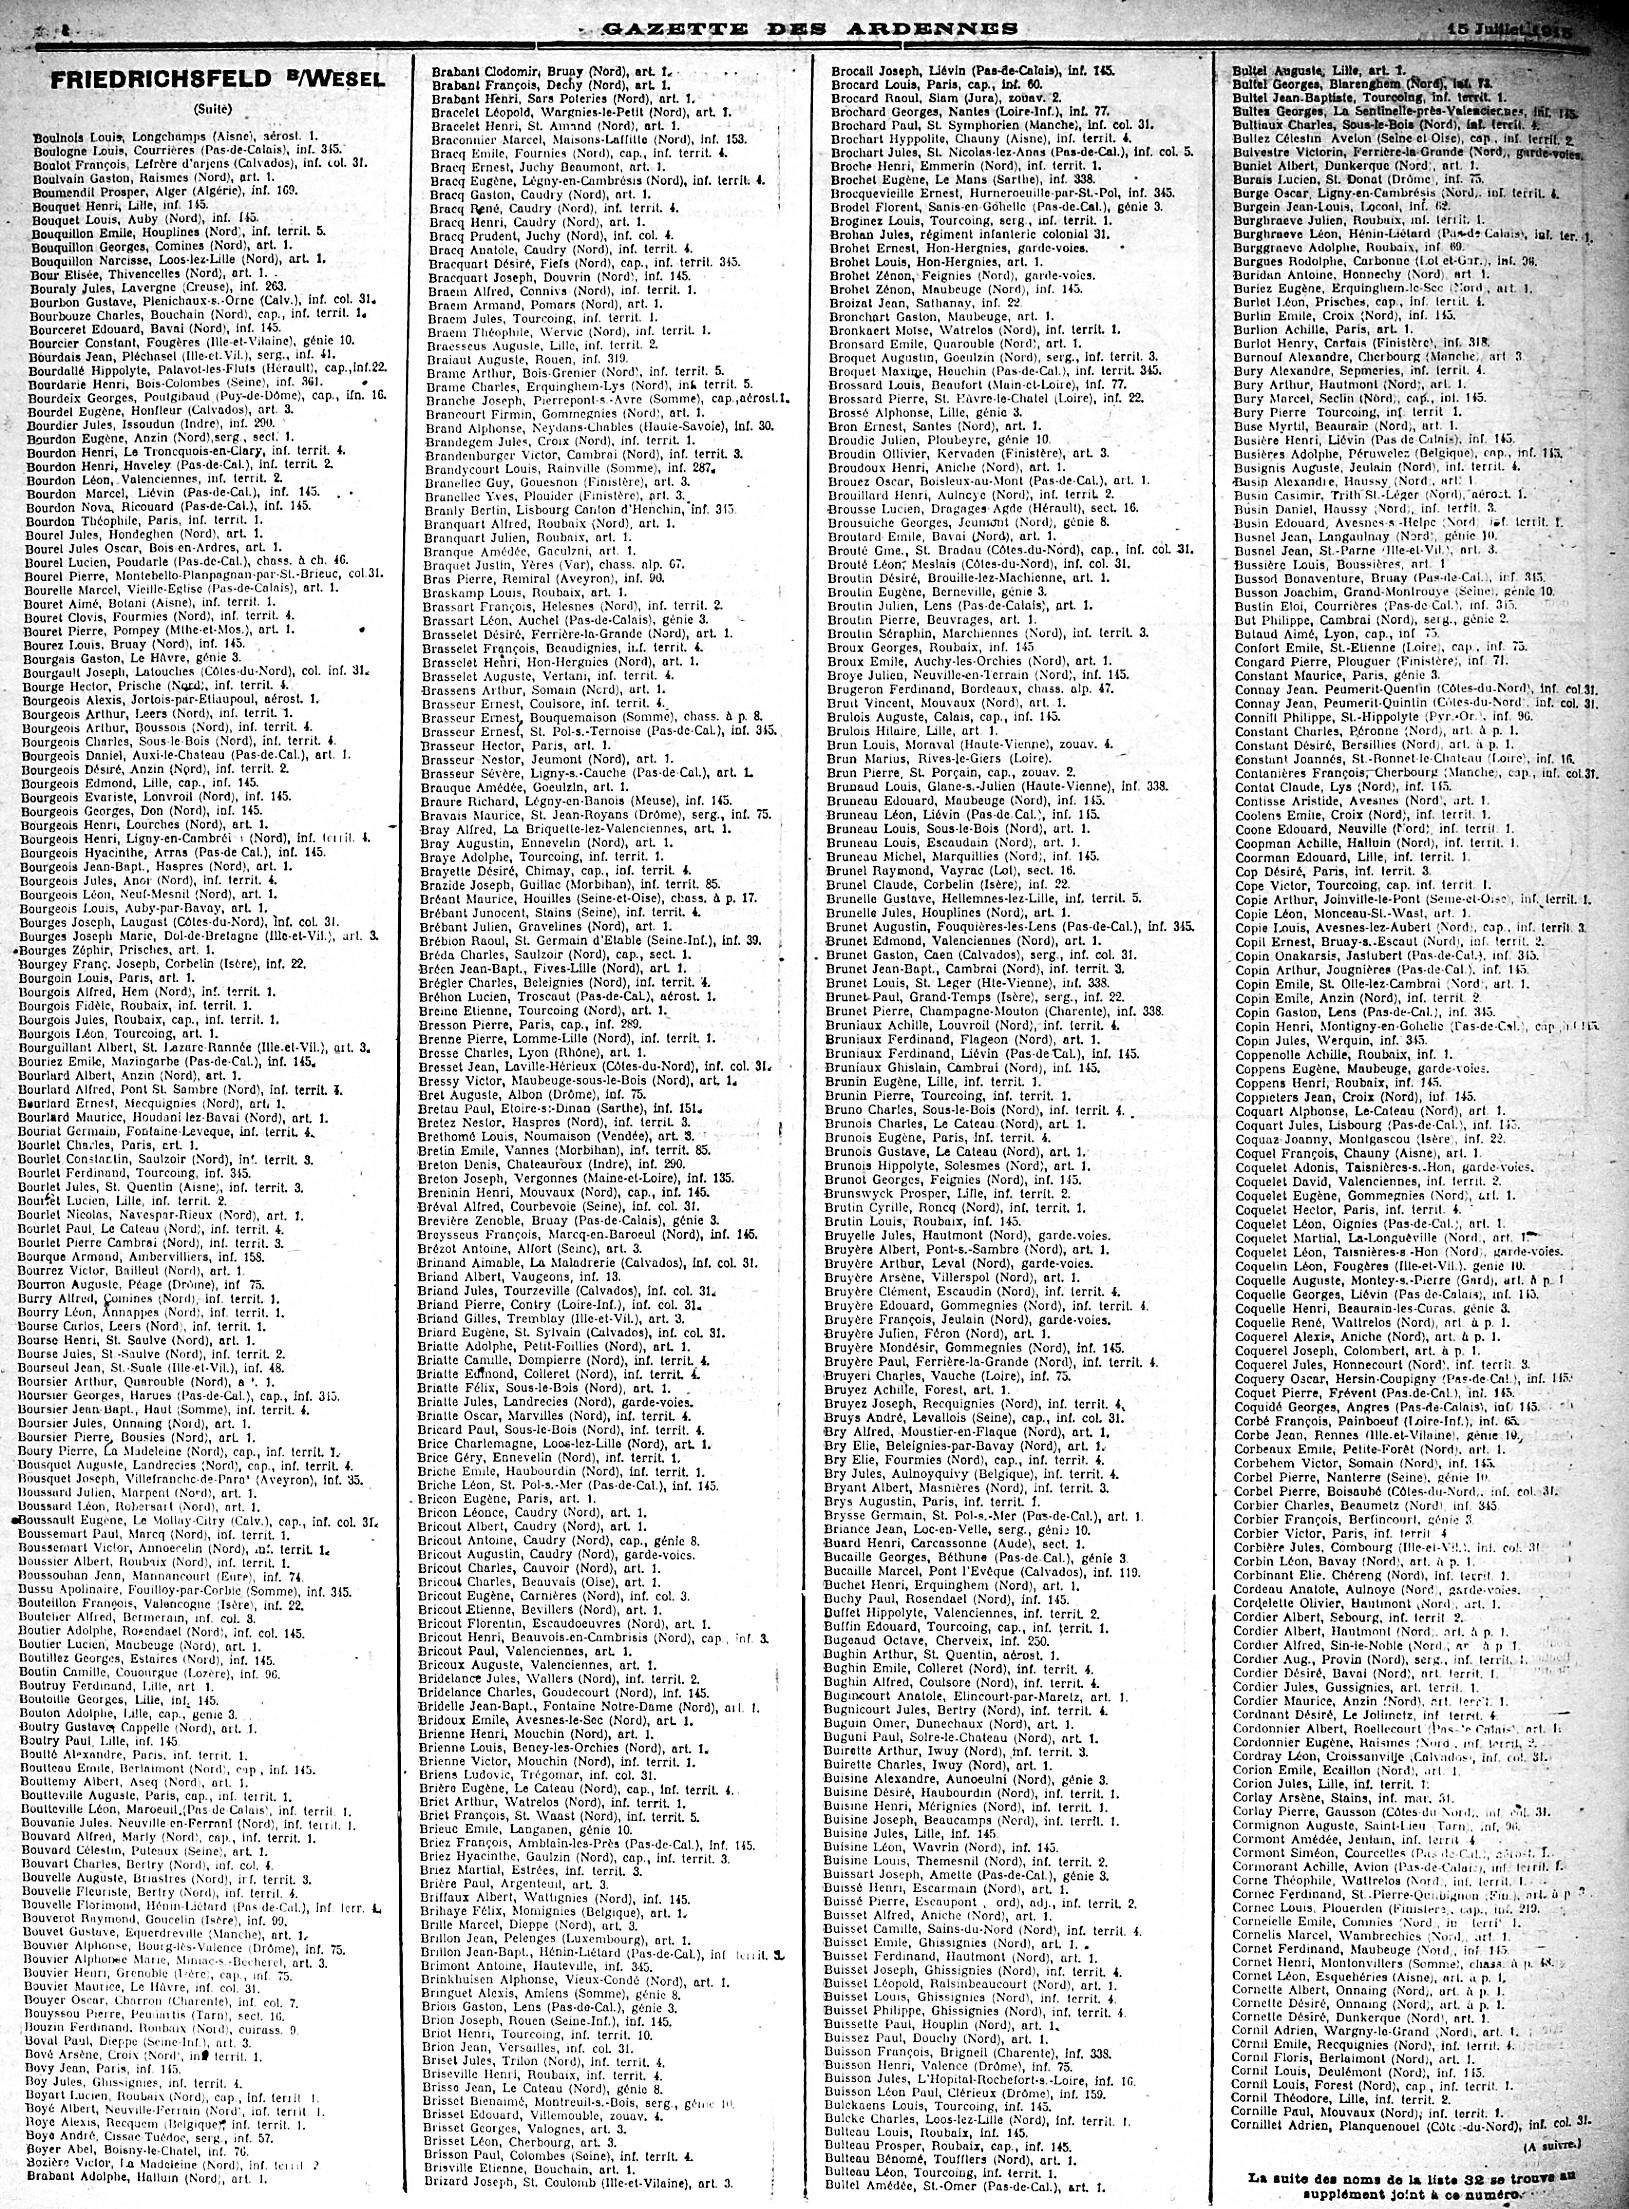 liste de prisonniers au camp de Friedrichfeld dans la Gazette des Ardennes du 15 juillet 1915